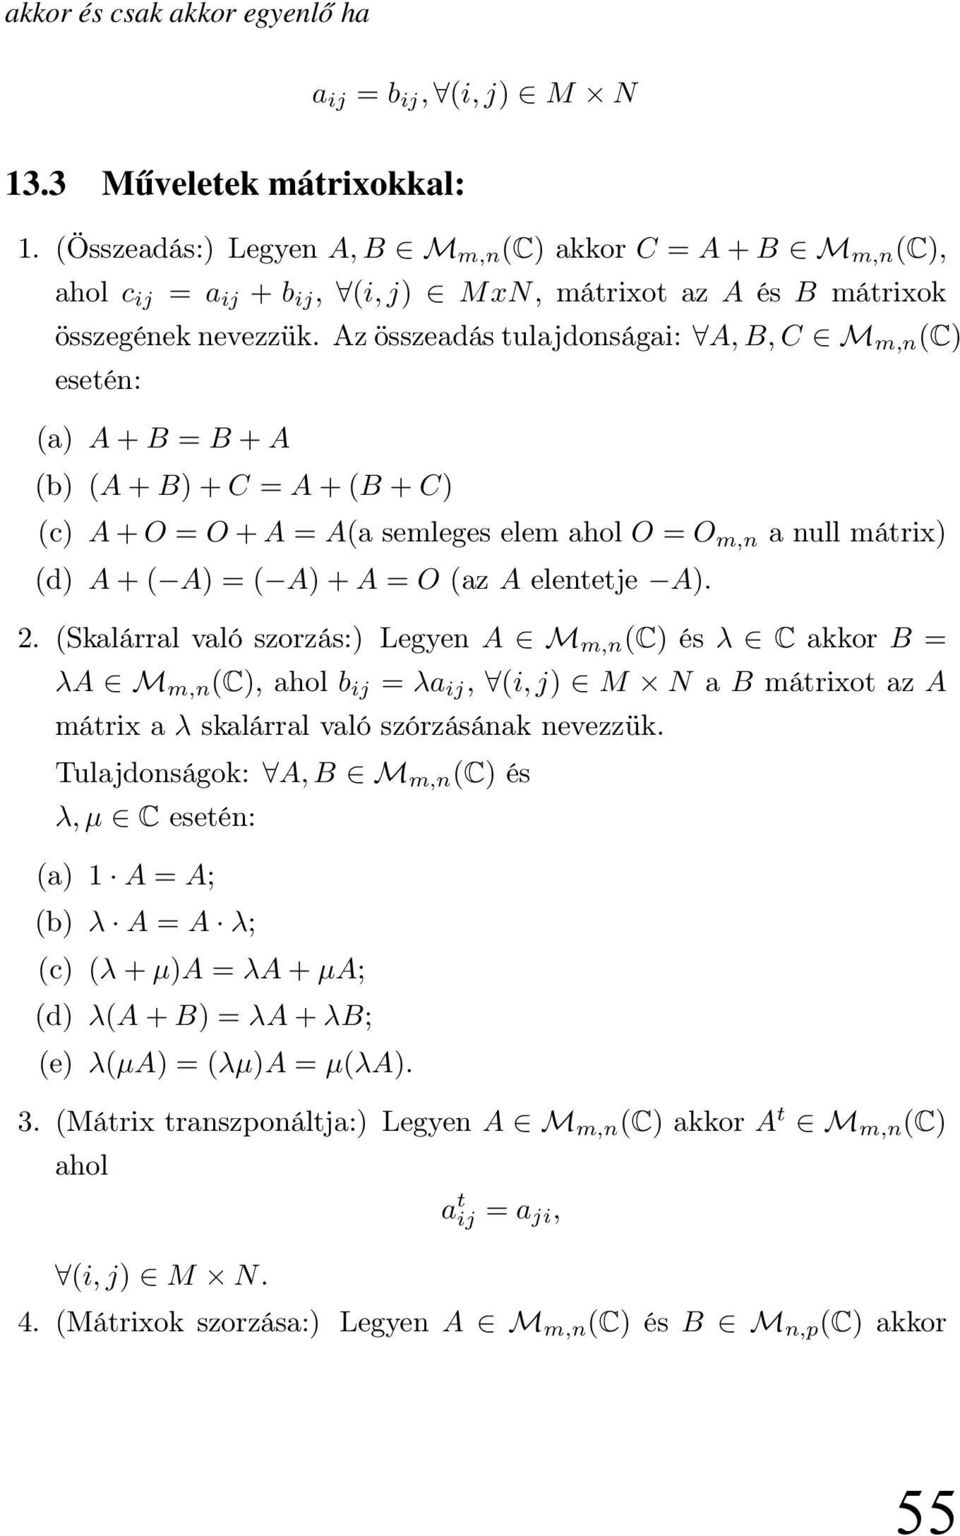 Az összeadás tulajdonságai: A, B, C M m,n (C) esetén: (a) A + B = B + A (b) (A + B) + C = A + (B + C) (c) A + O = O + A = A(a semleges elem ahol O = O m,n a null mátrix) (d) A + ( A) = ( A) + A = O